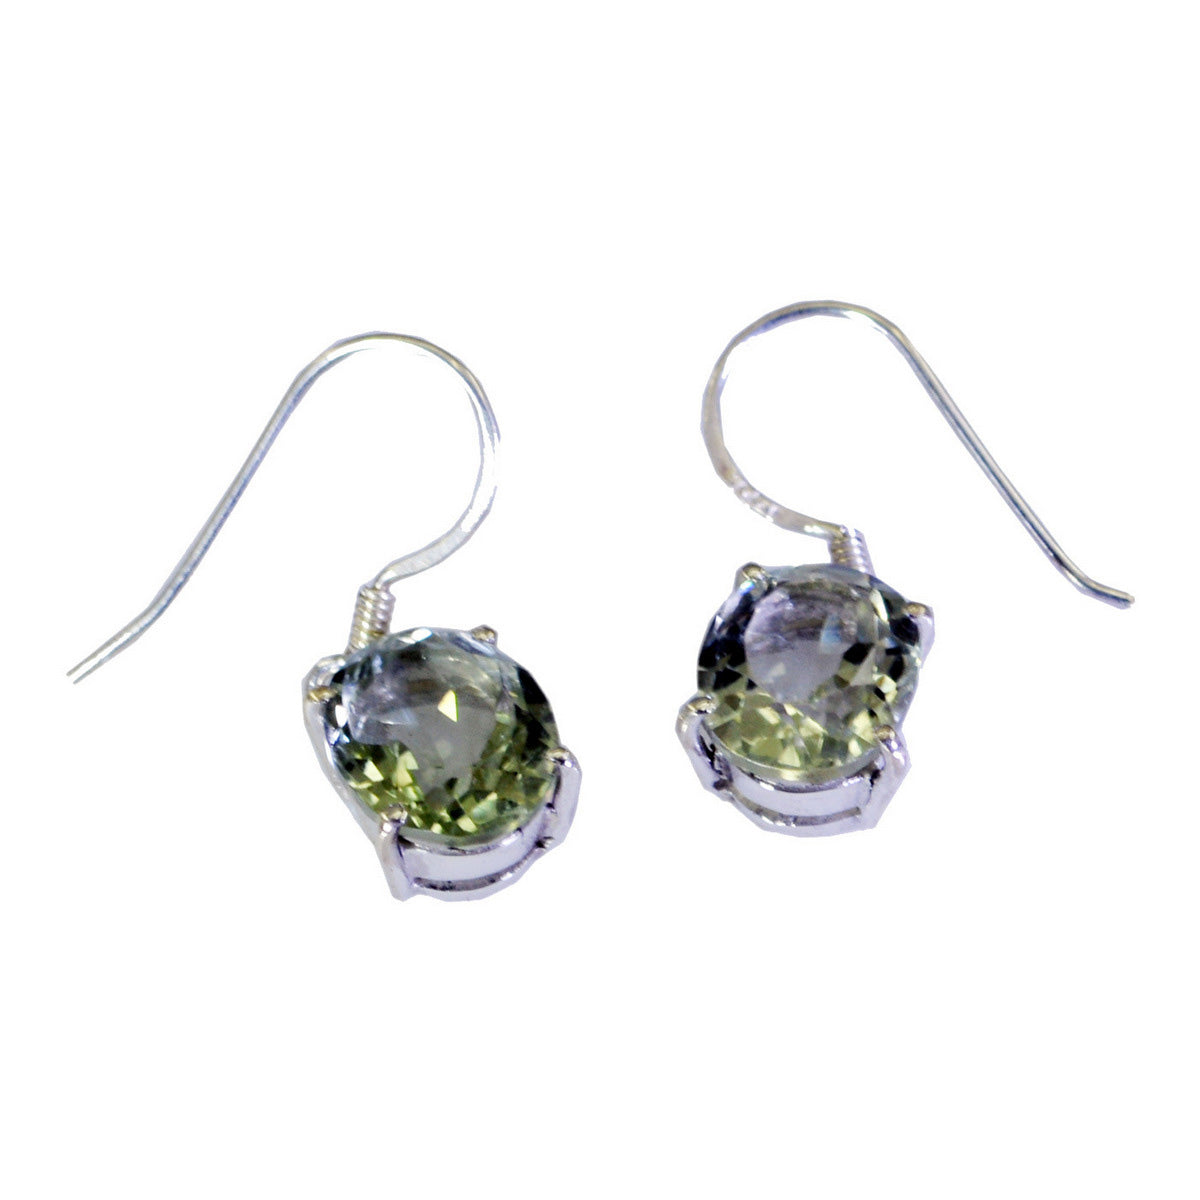 Riyo Genuine Gems round Faceted Green Amethyst Silver Earrings handmade gift